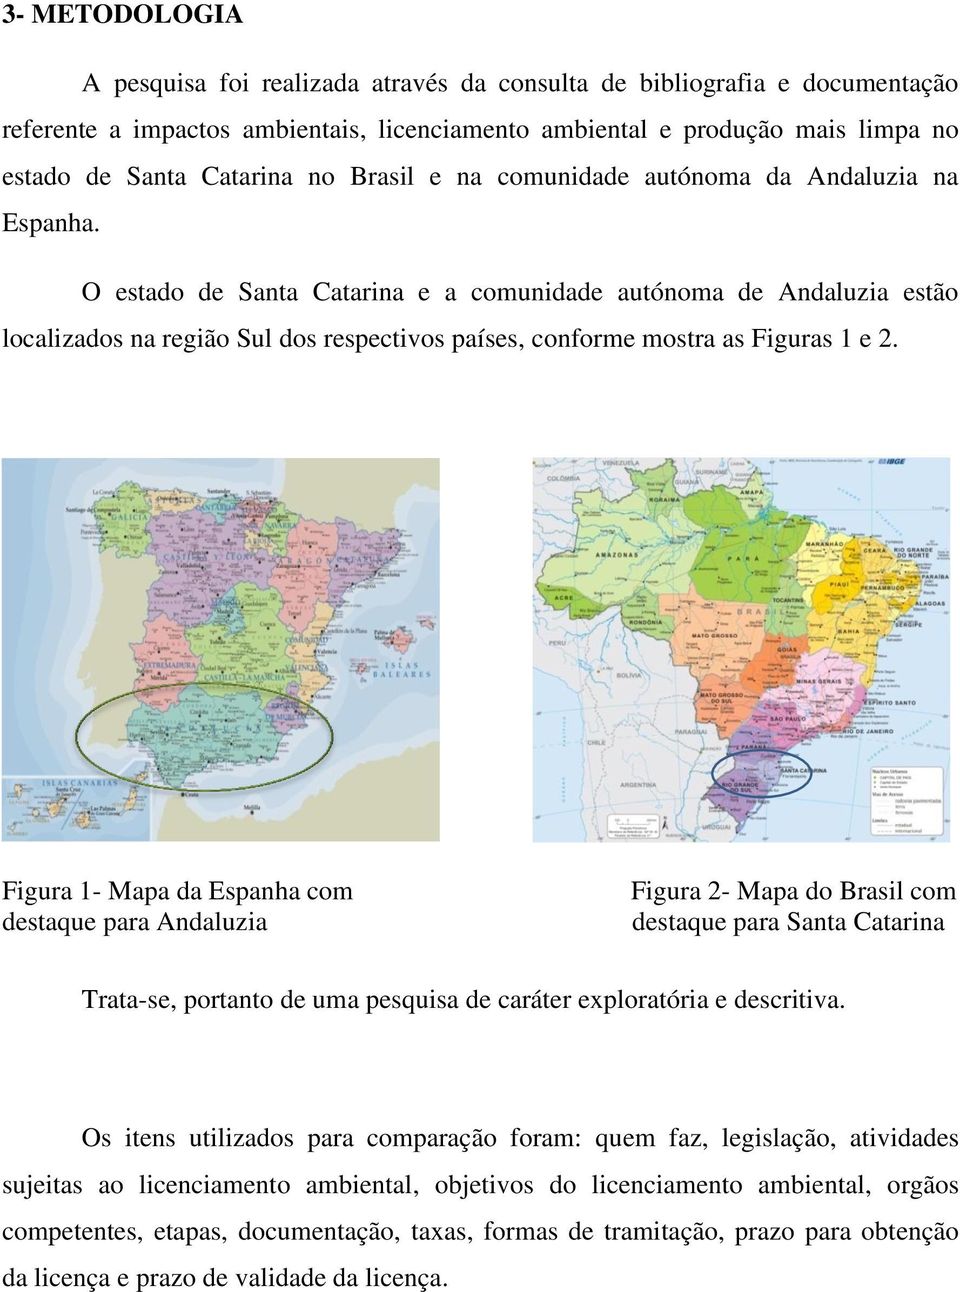 O estado de Santa Catarina e a comunidade autónoma de Andaluzia estão localizados na região Sul dos respectivos países, conforme mostra as Figuras 1 e 2.